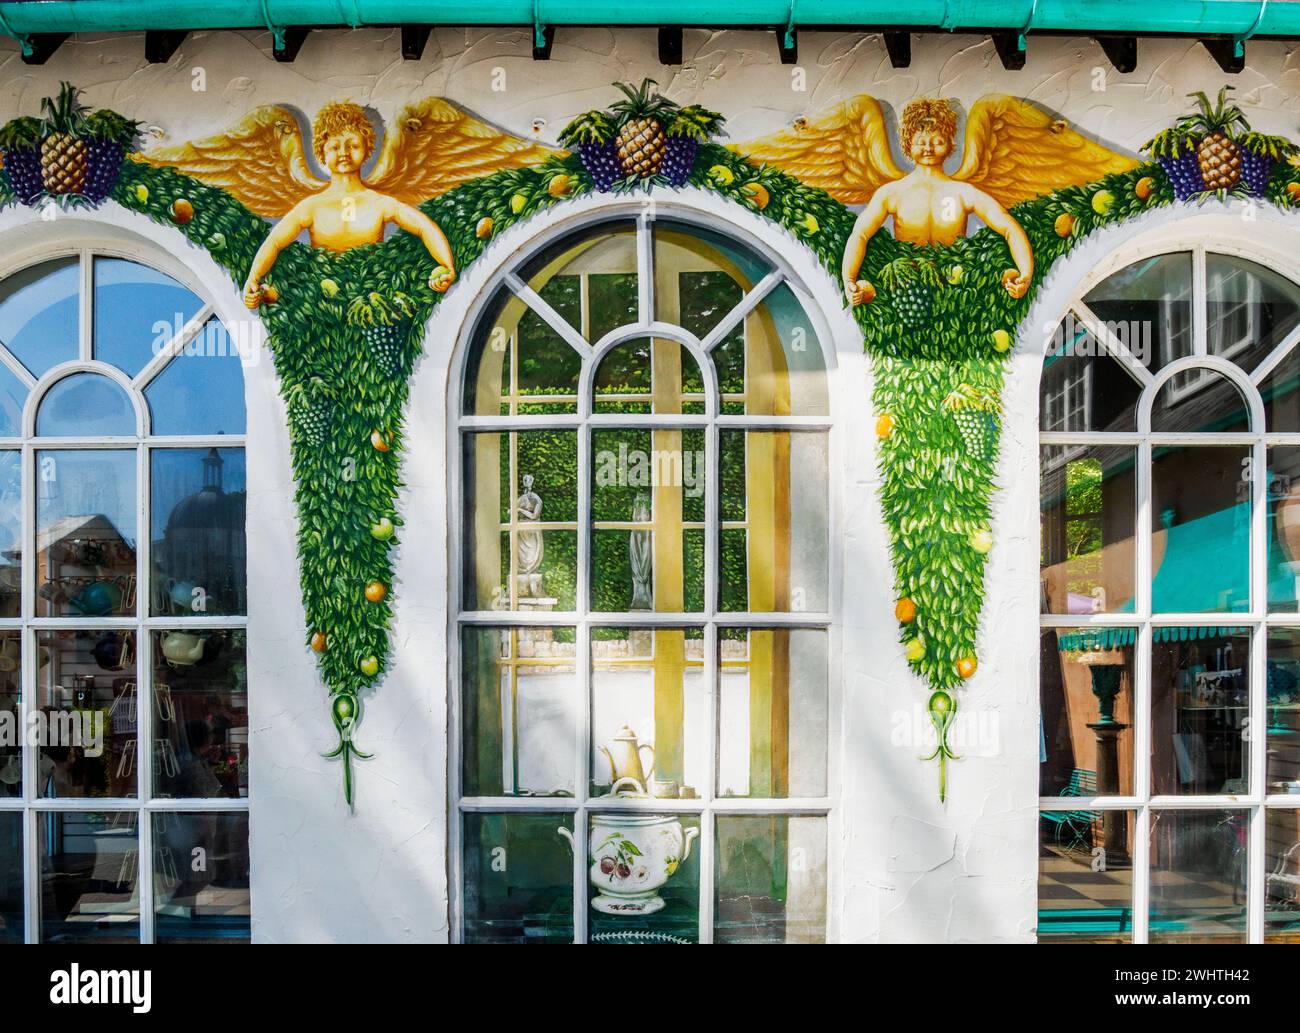 Affreschi di Angel che decorano le finestre circondano Portmeirion North Wales UK - villaggio di fantasia all'italiana creato dall'architetto Sir Clough Willams-Ellis Foto Stock